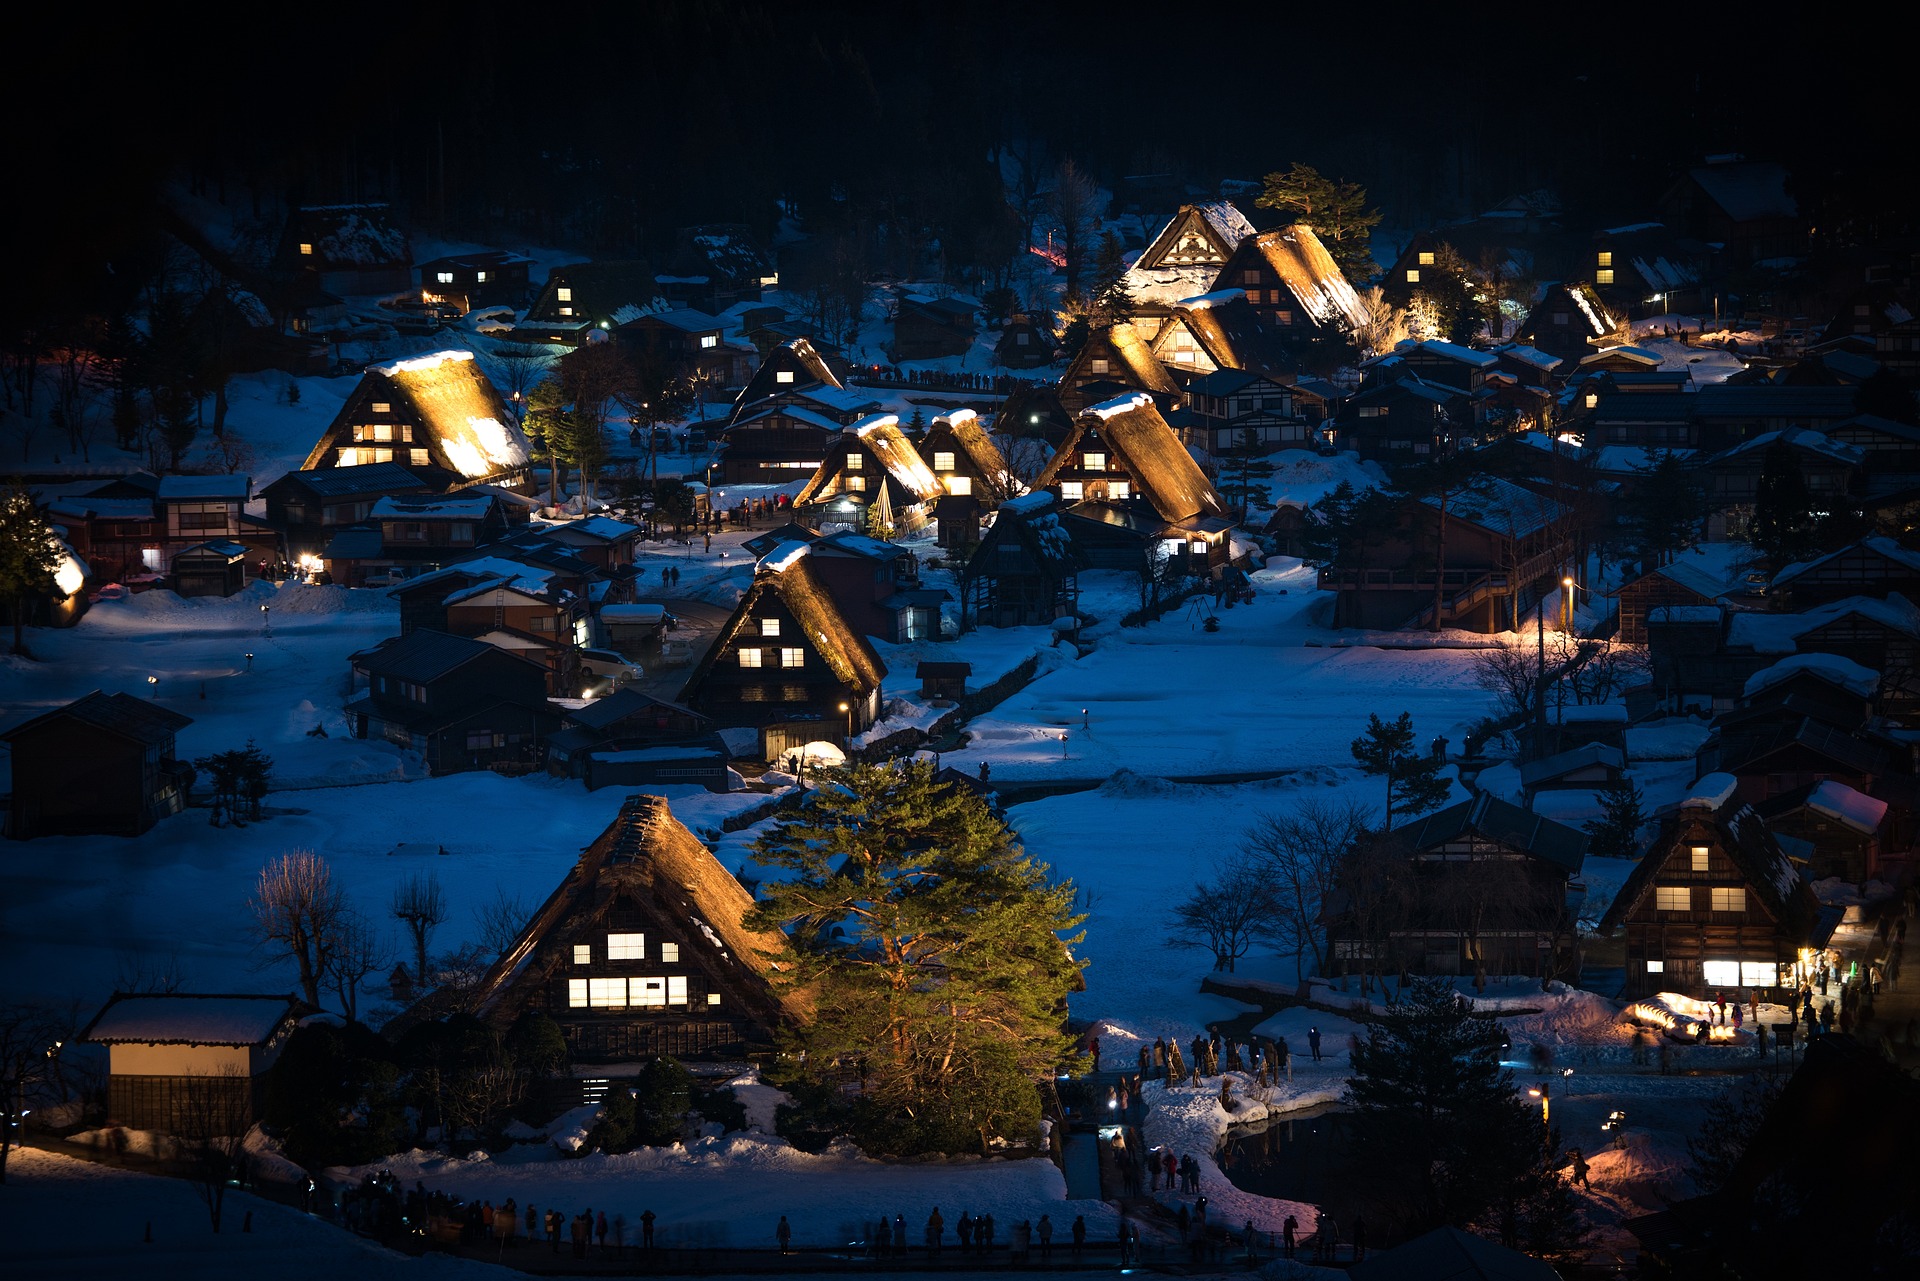 Bajkovito japansko selo koje je ograničilo posete